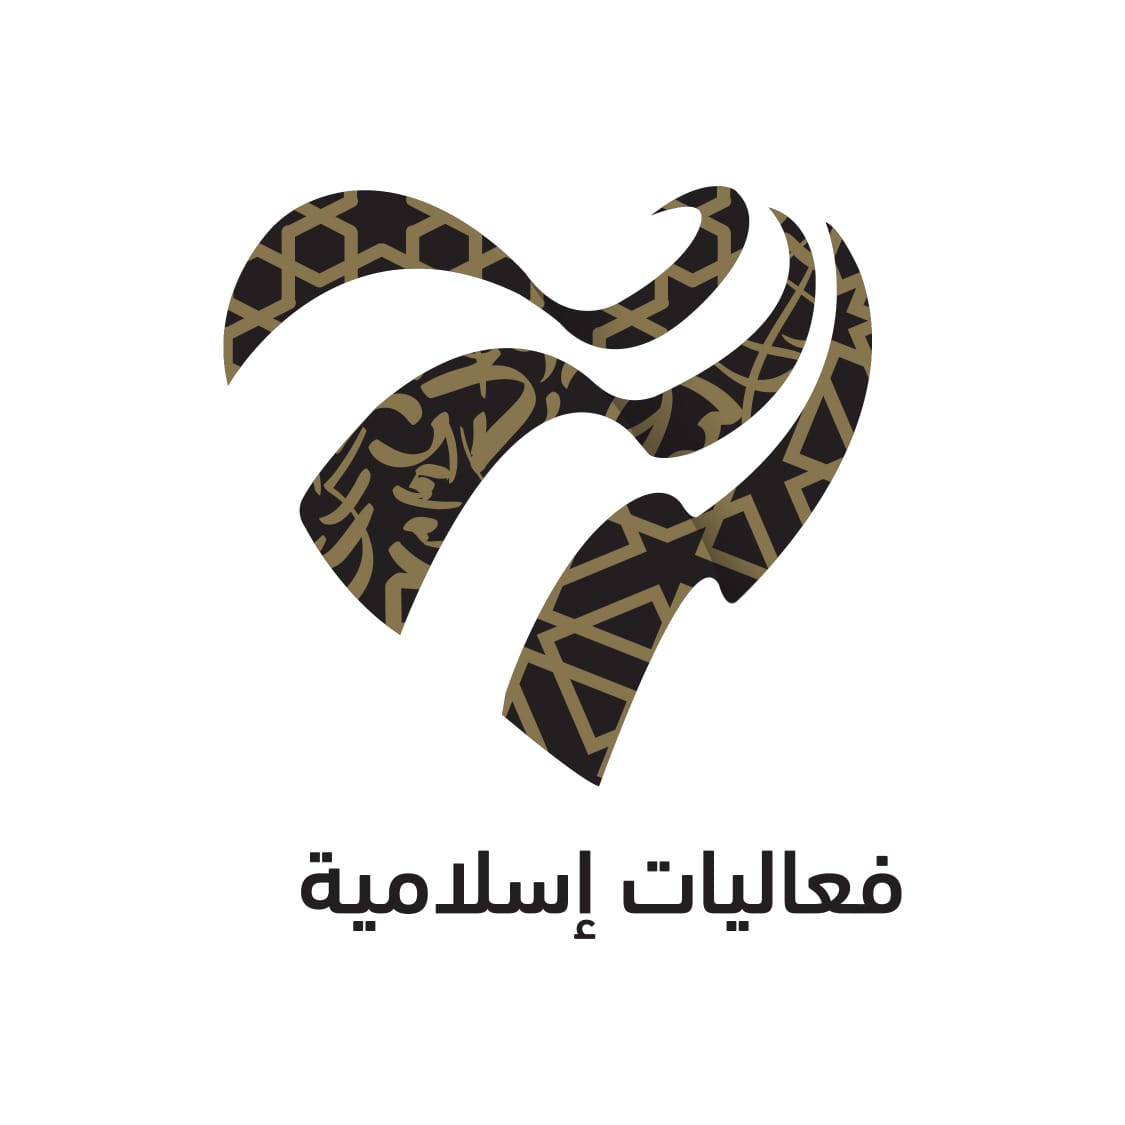 إفتتاح معرض عمارة الحرمين الشريفين ضمن “موسم رمضان” في مكة المكرمة